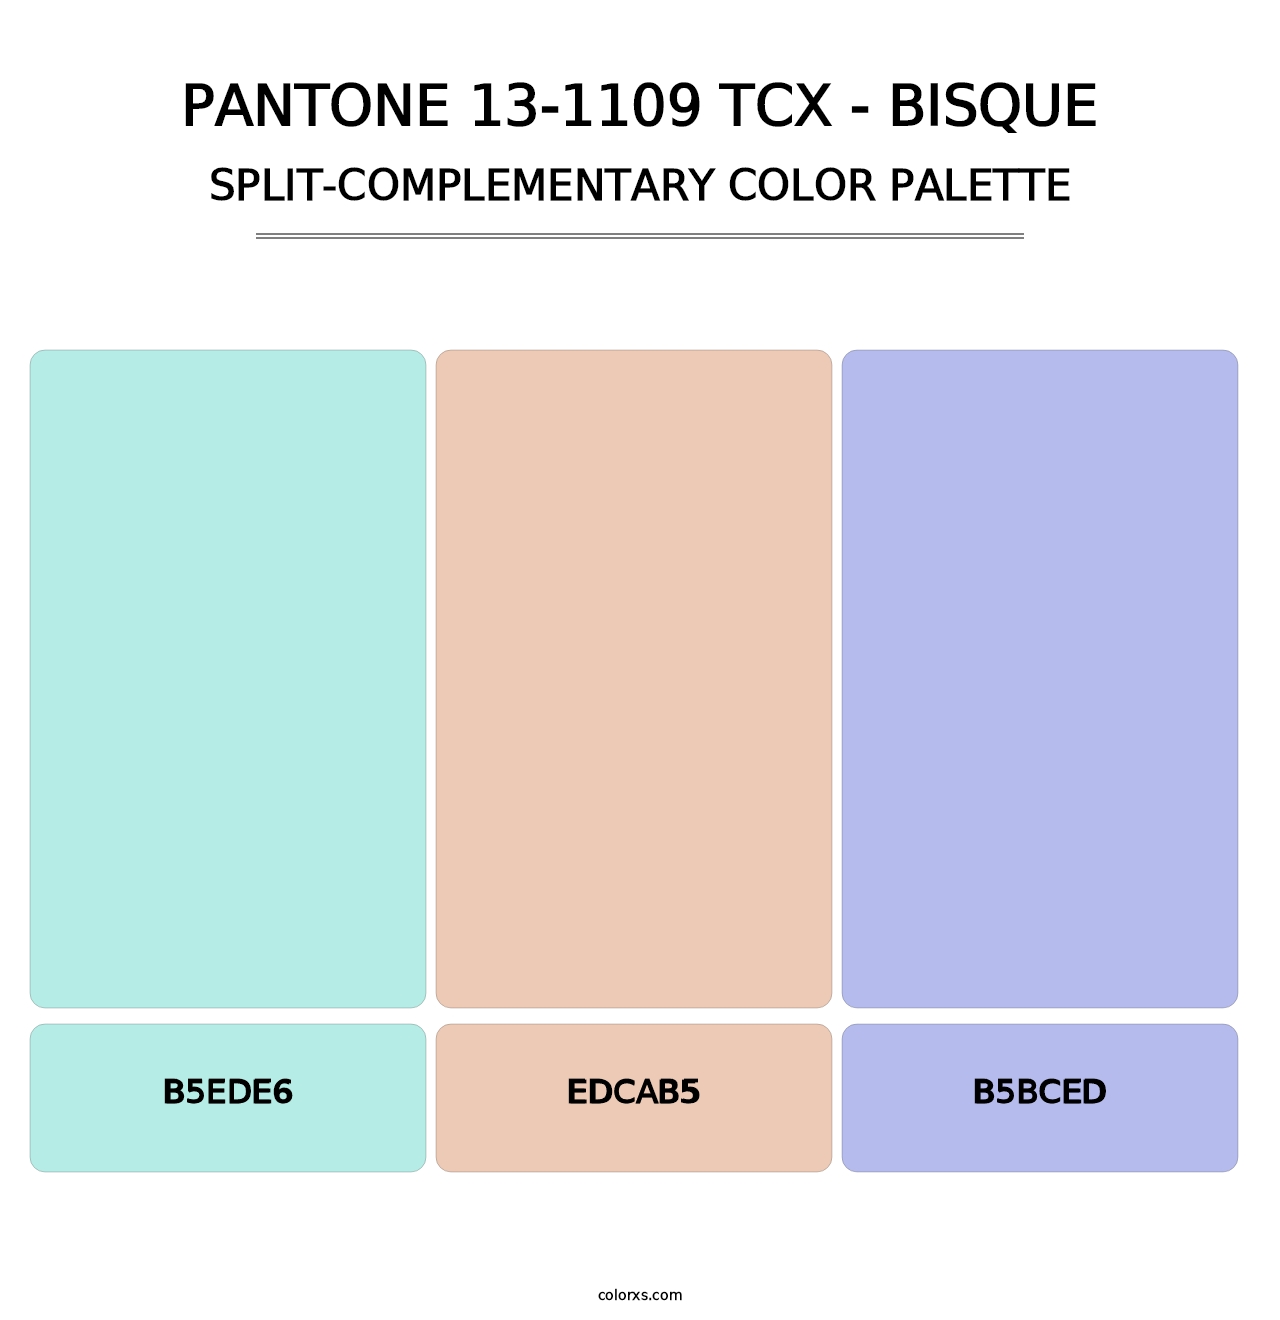 PANTONE 13-1109 TCX - Bisque - Split-Complementary Color Palette